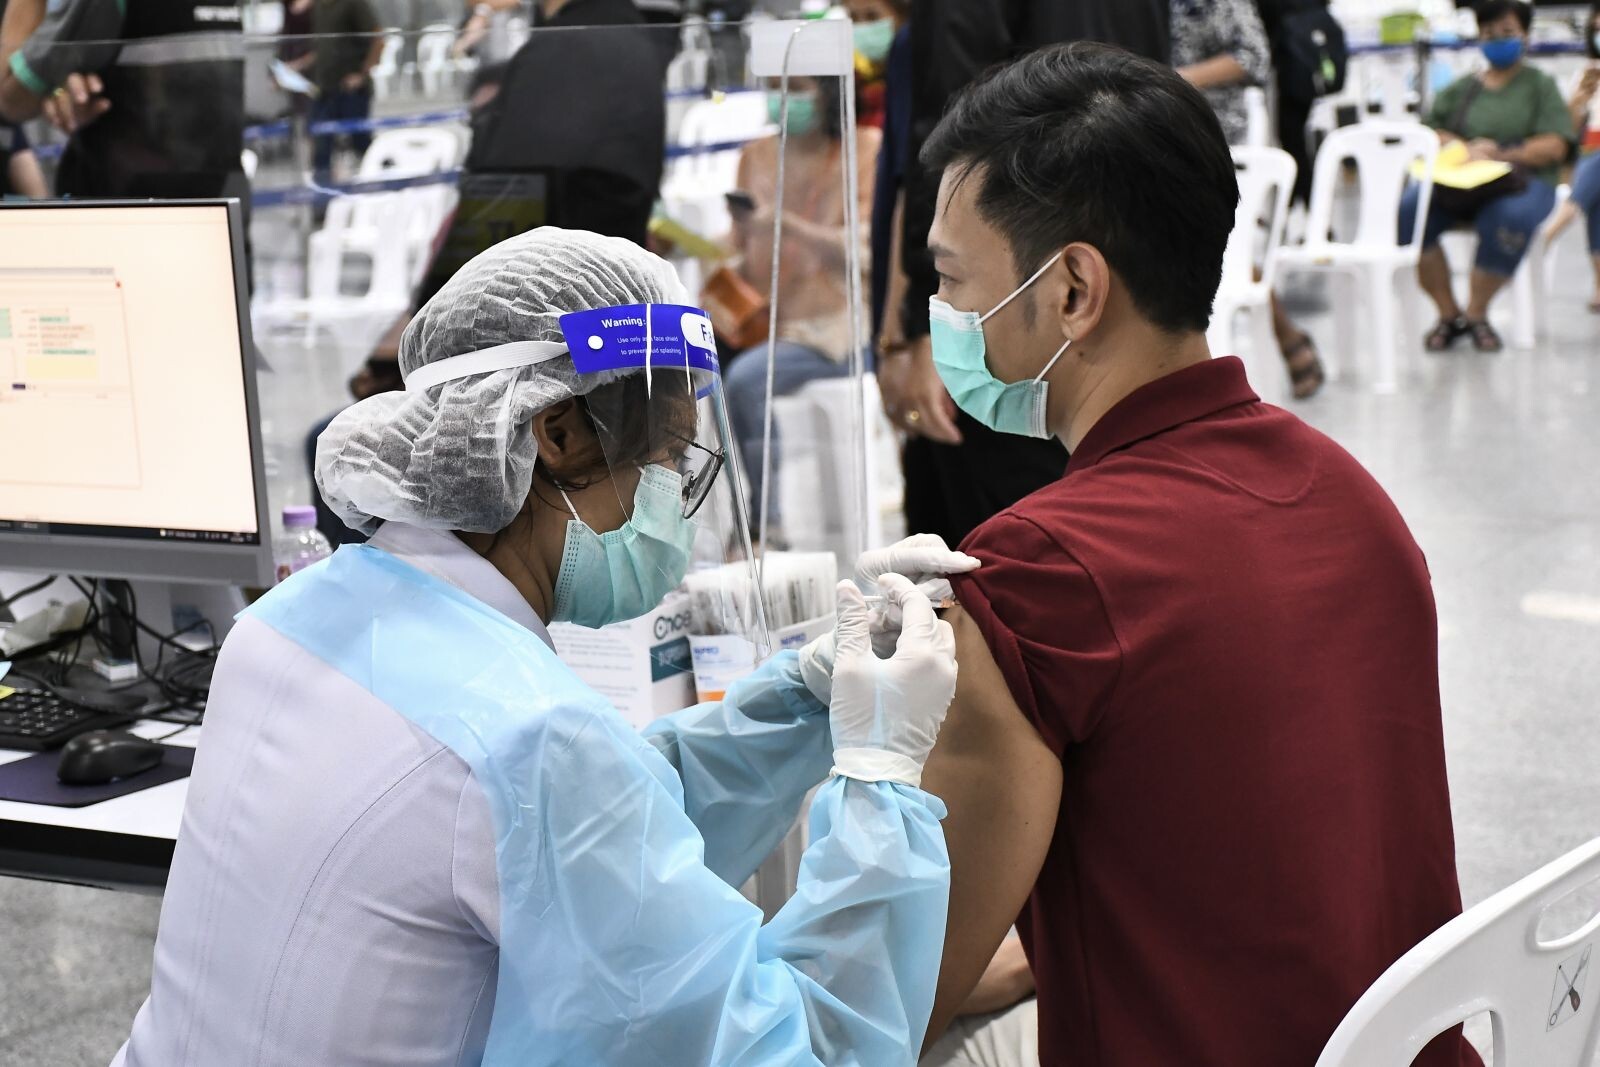 กรมวิทย์ฯ เผยประเทศไทยมีระบบติดตามกลุ่มผู้ได้รับวัคซีนโควิด 19 แนะประชาชนไม่ต้องตรวจหาภูมิคุ้มกันหลังได้รับวัคซีน